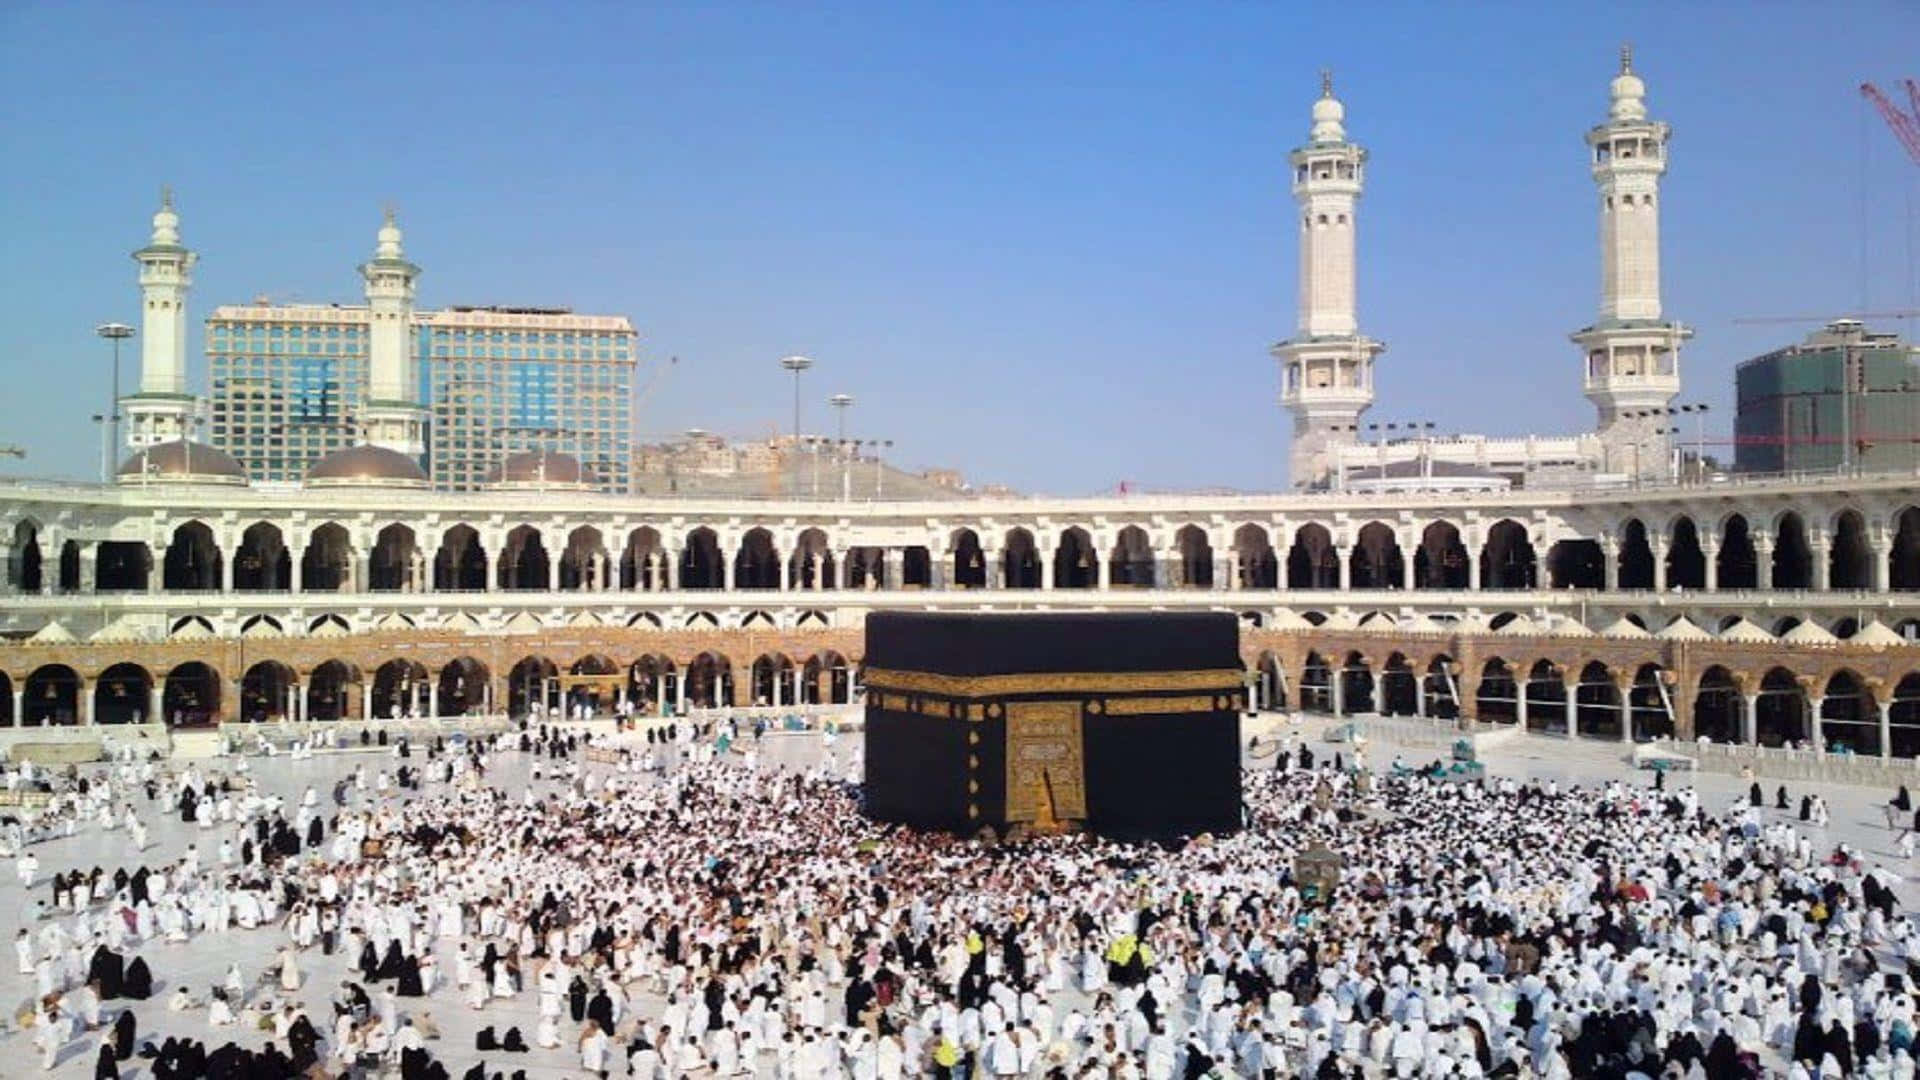 Umgrande Grupo De Pessoas Está Em Pé Ao Redor Da Kaaba.